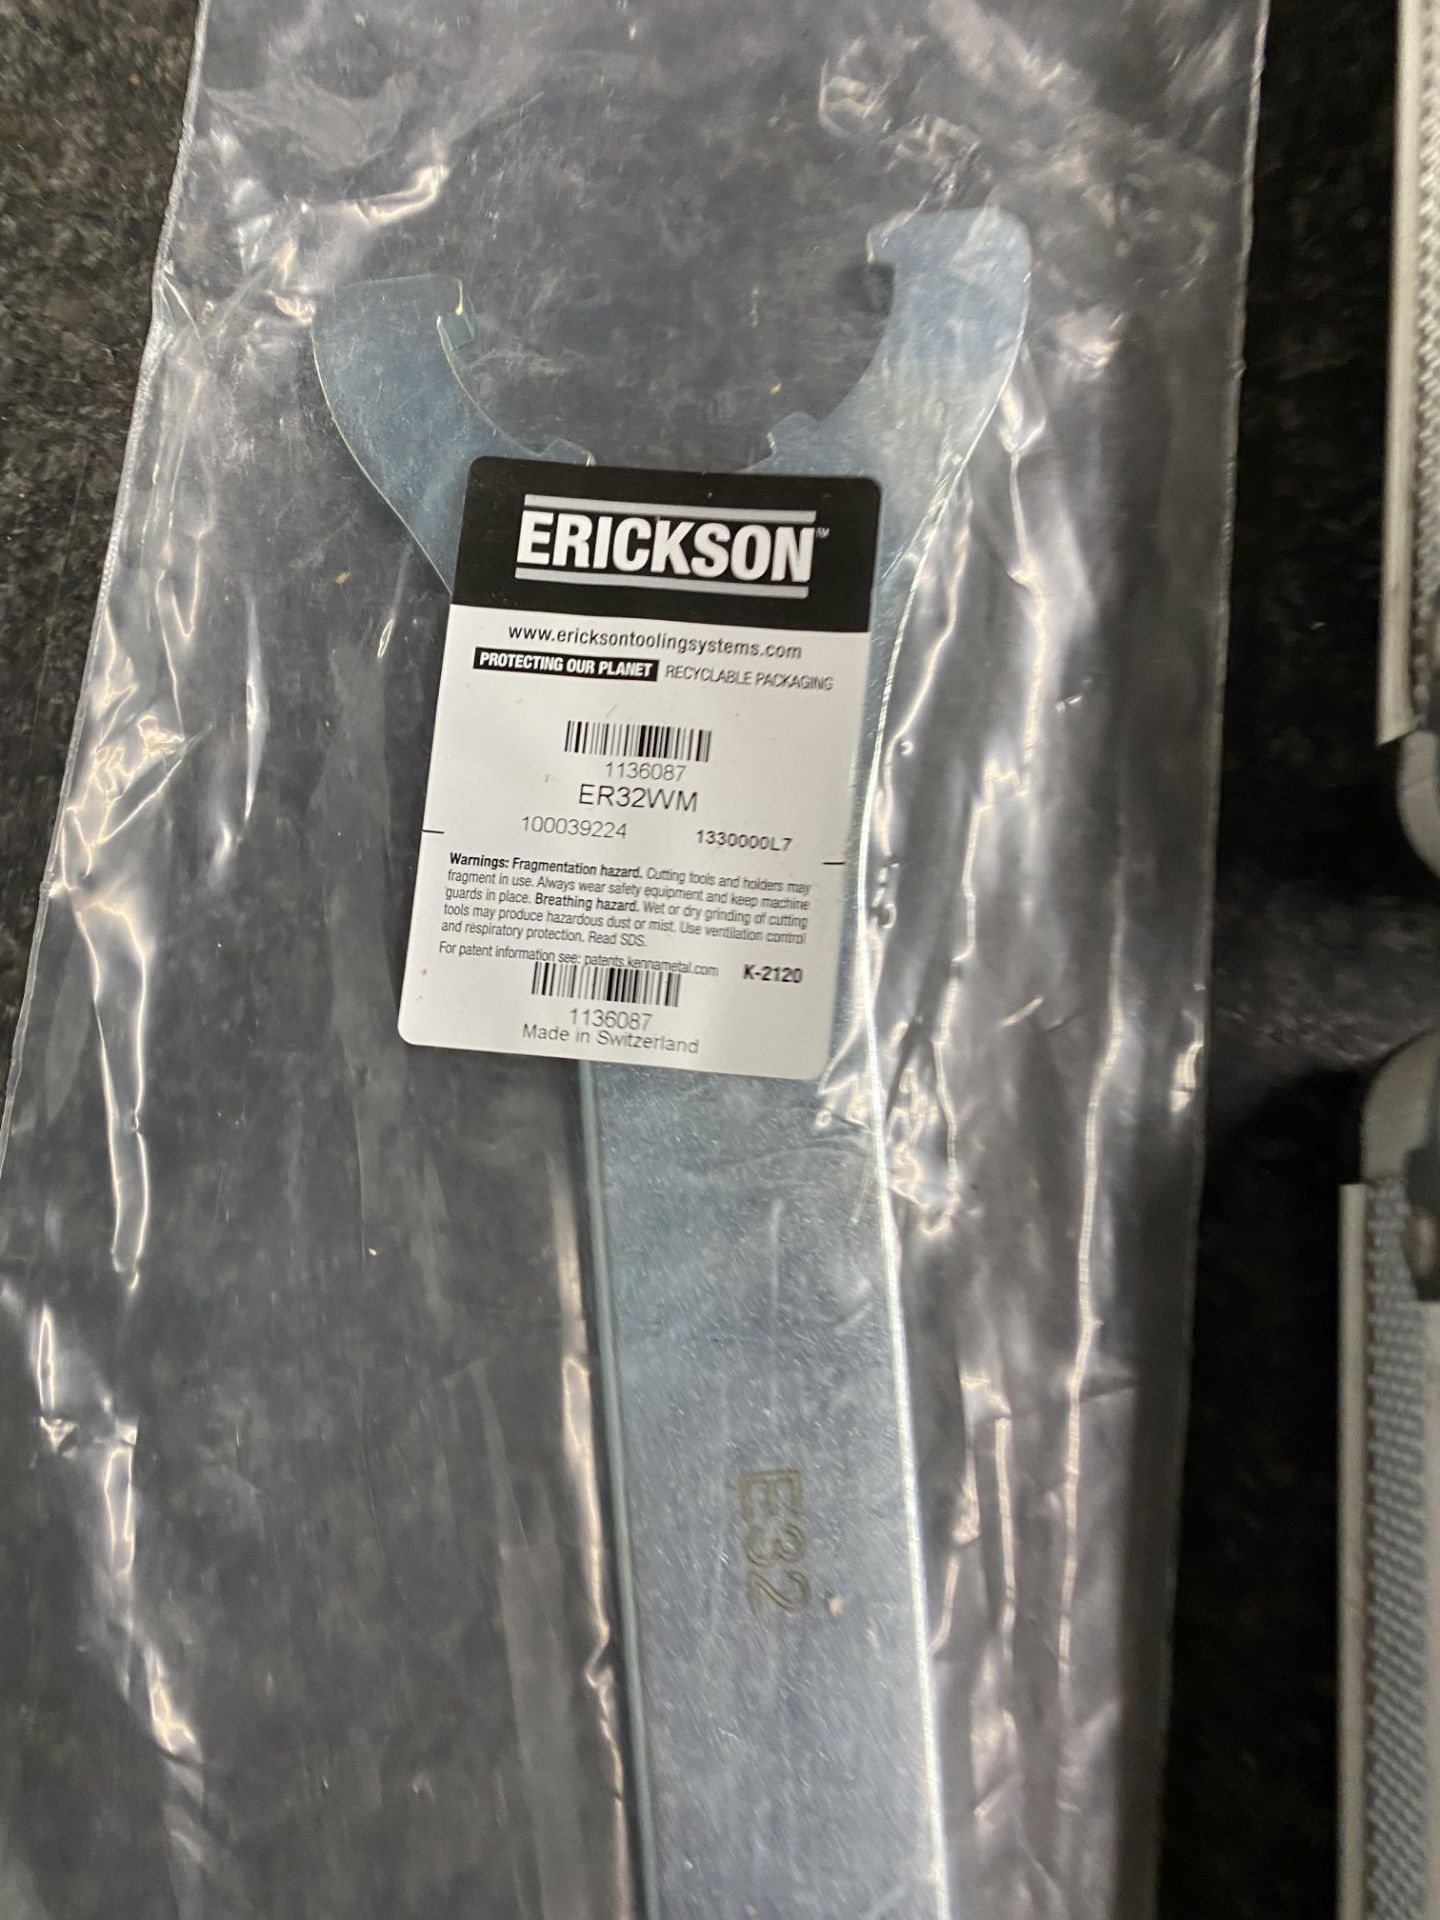 HR Plumbers Holesaw Kit 9 Pc Bi-Metal Kit with Erickson ER32WM Wrench - Bild 4 aus 9